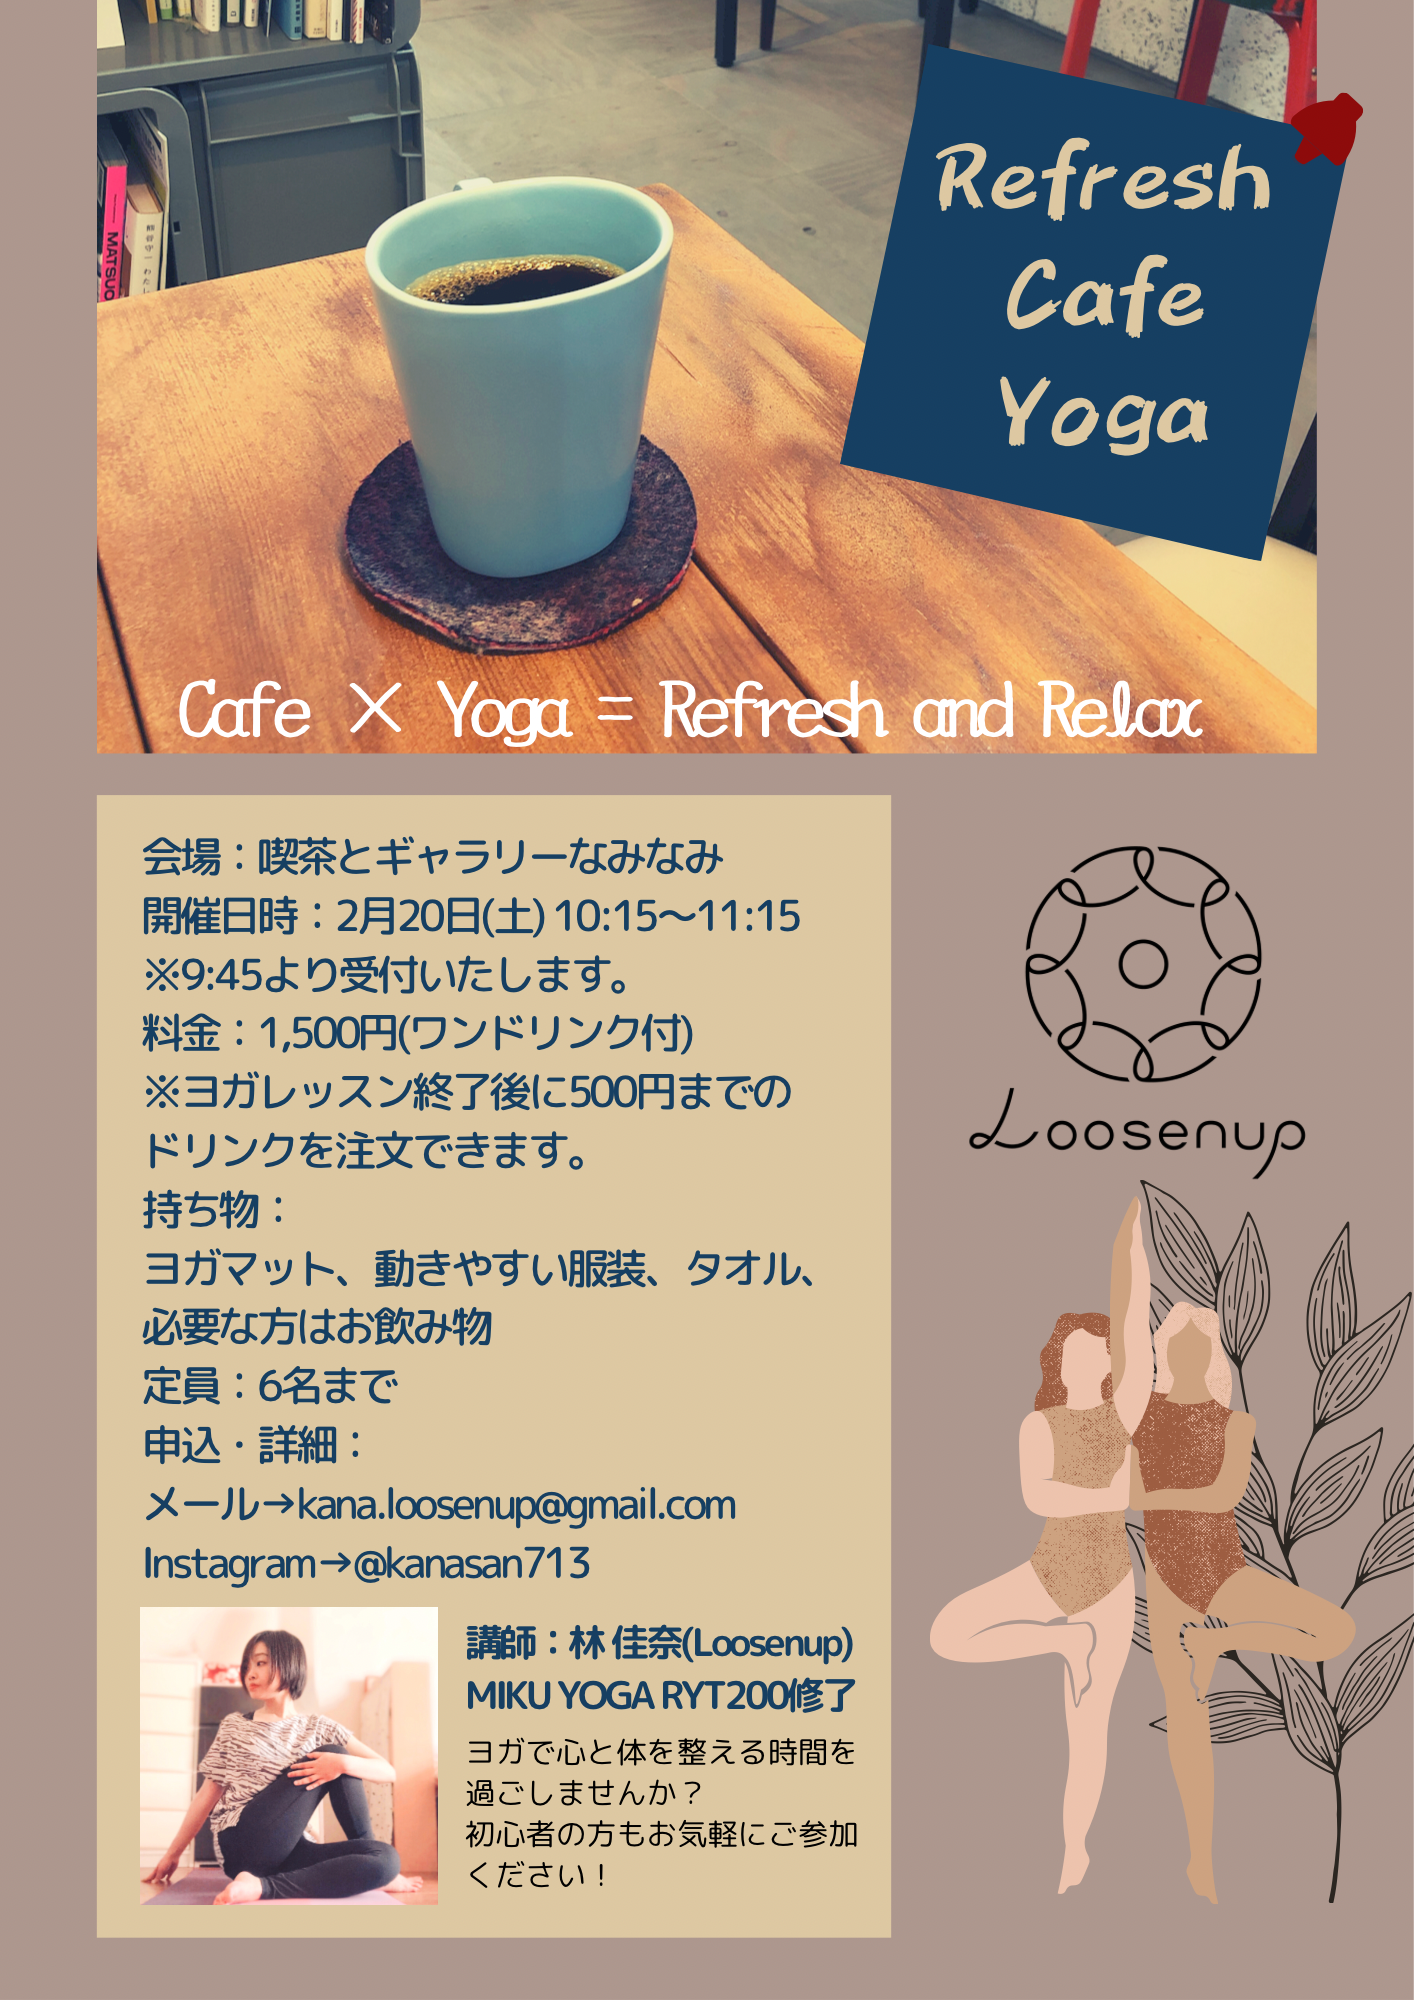 イベント名：Refresh Cafe Yoga